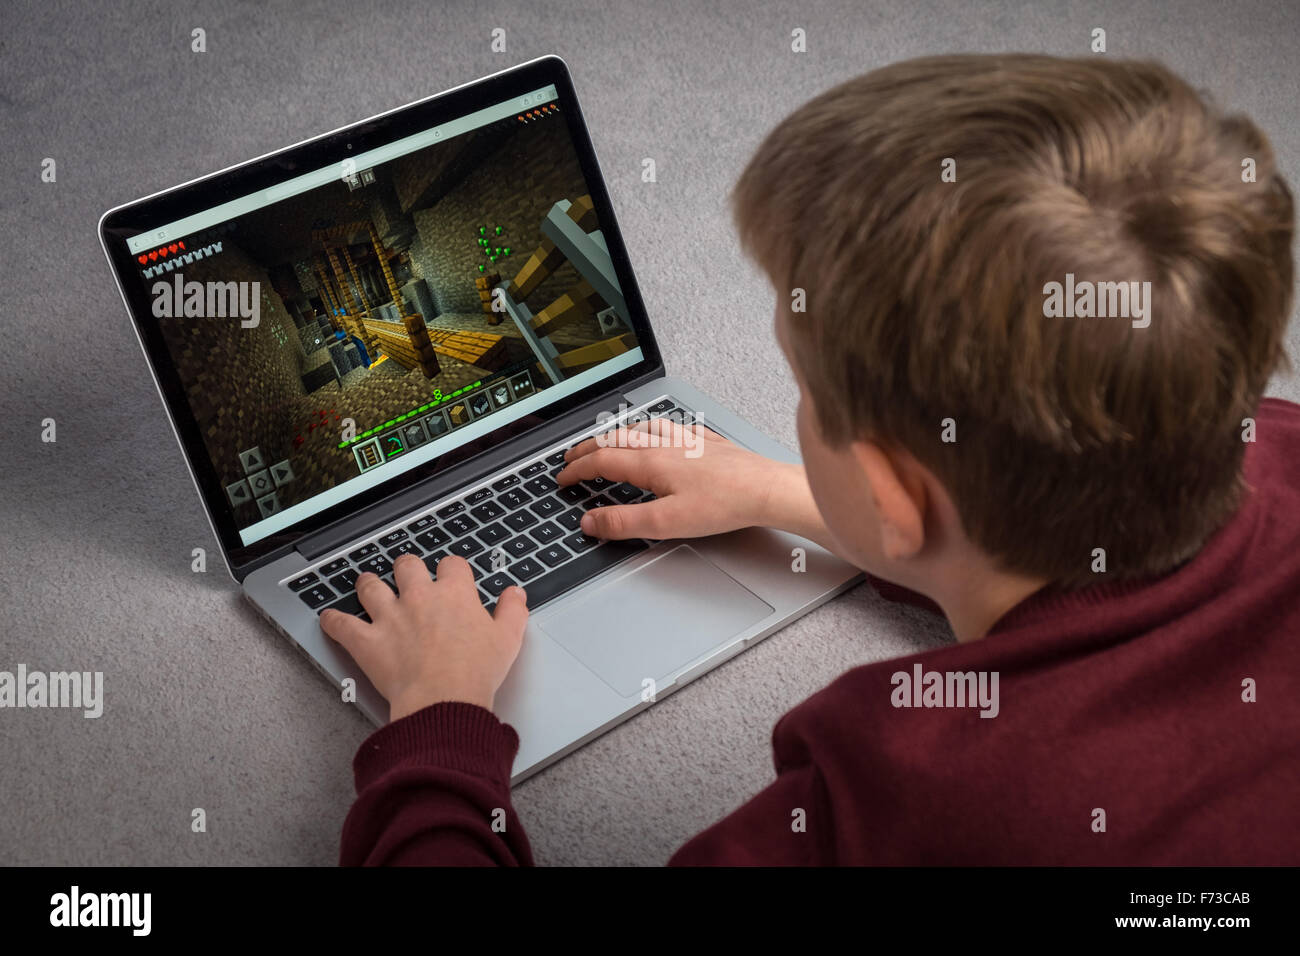 Un niño que está jugando el juego de ordenador Minecraft en un portátil. Foto de stock